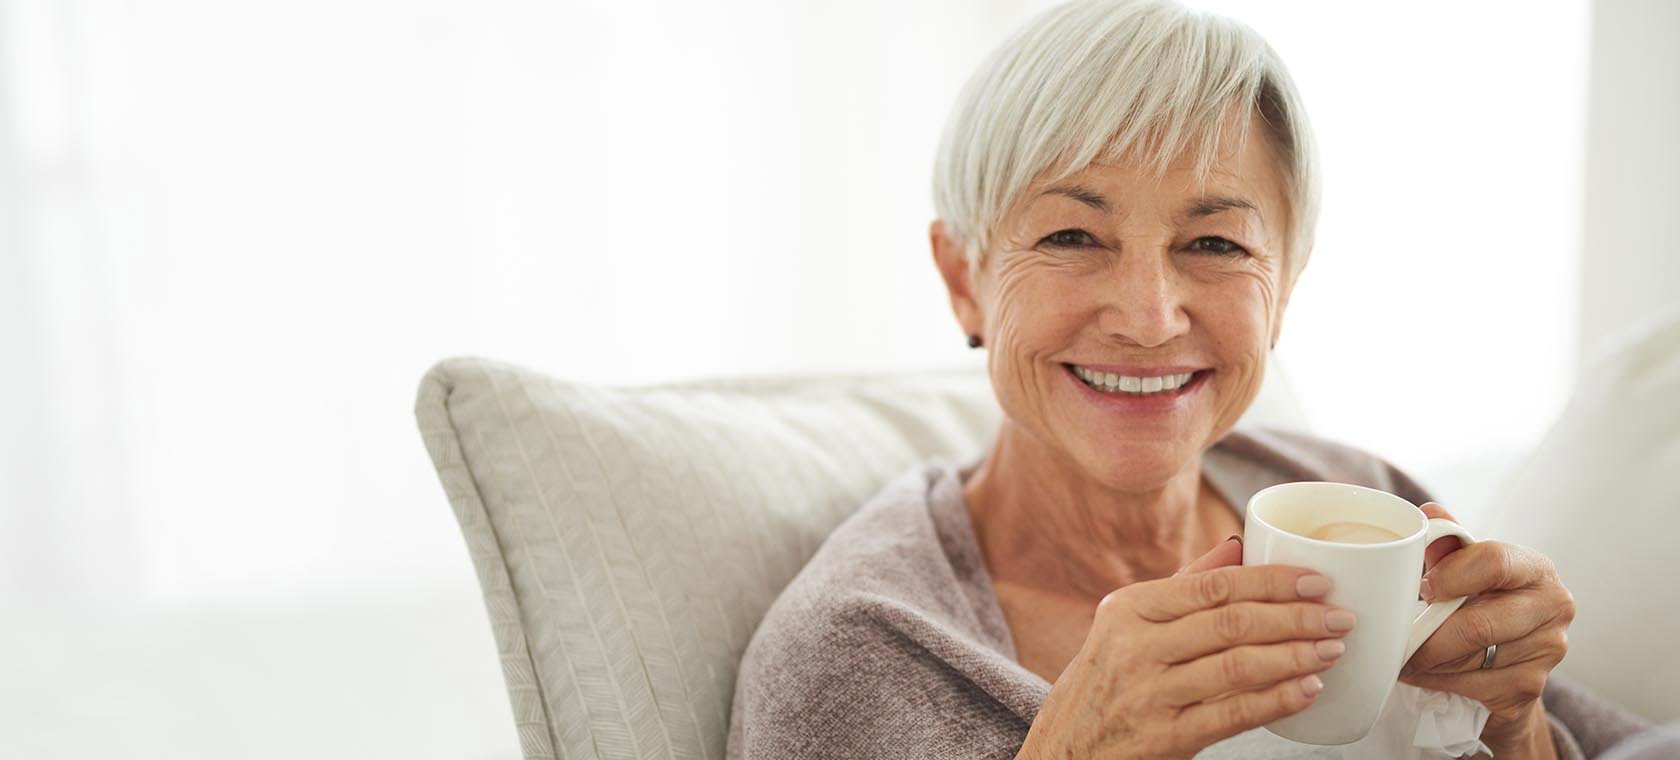 elderly woman with dementia enjoying coffee